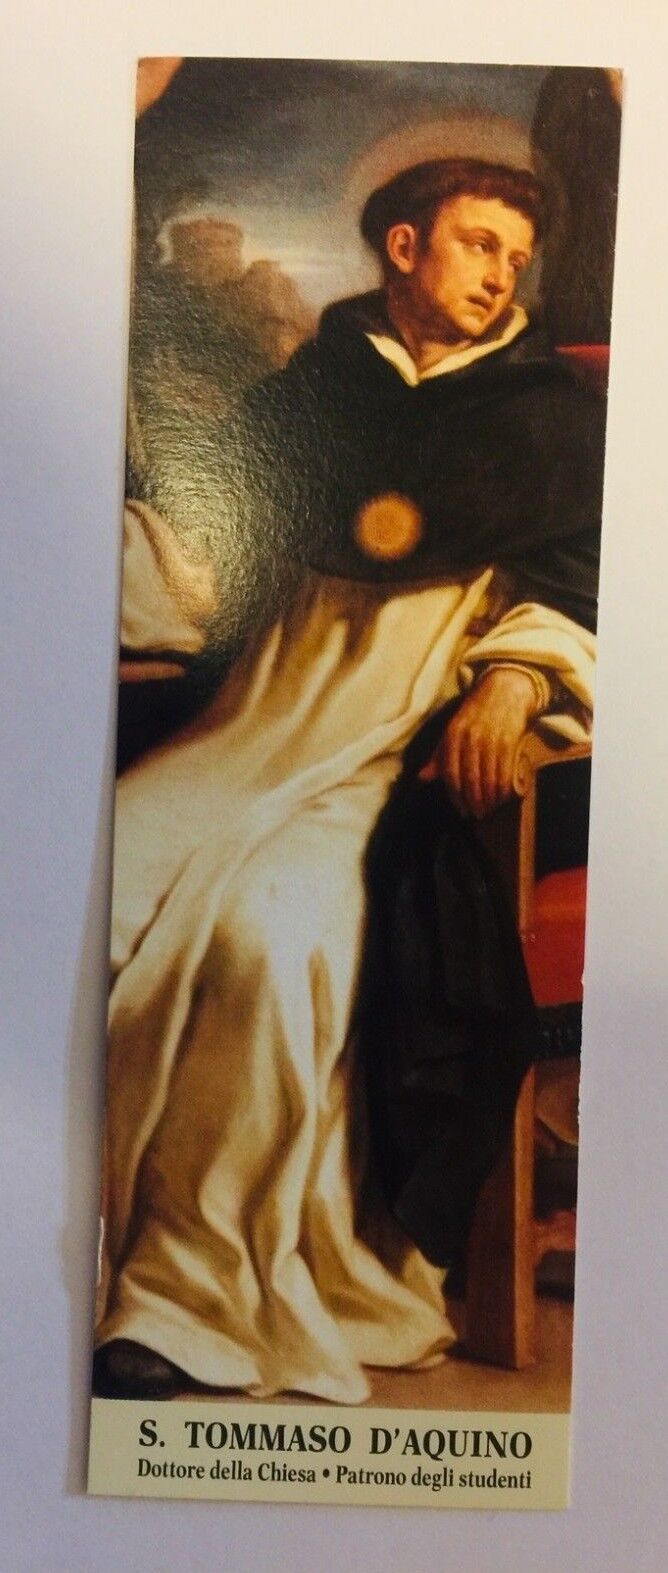 Saint Thomas Aquinas Authentic Prayer Card, PRAYER IN ITALIAN, New From Italy